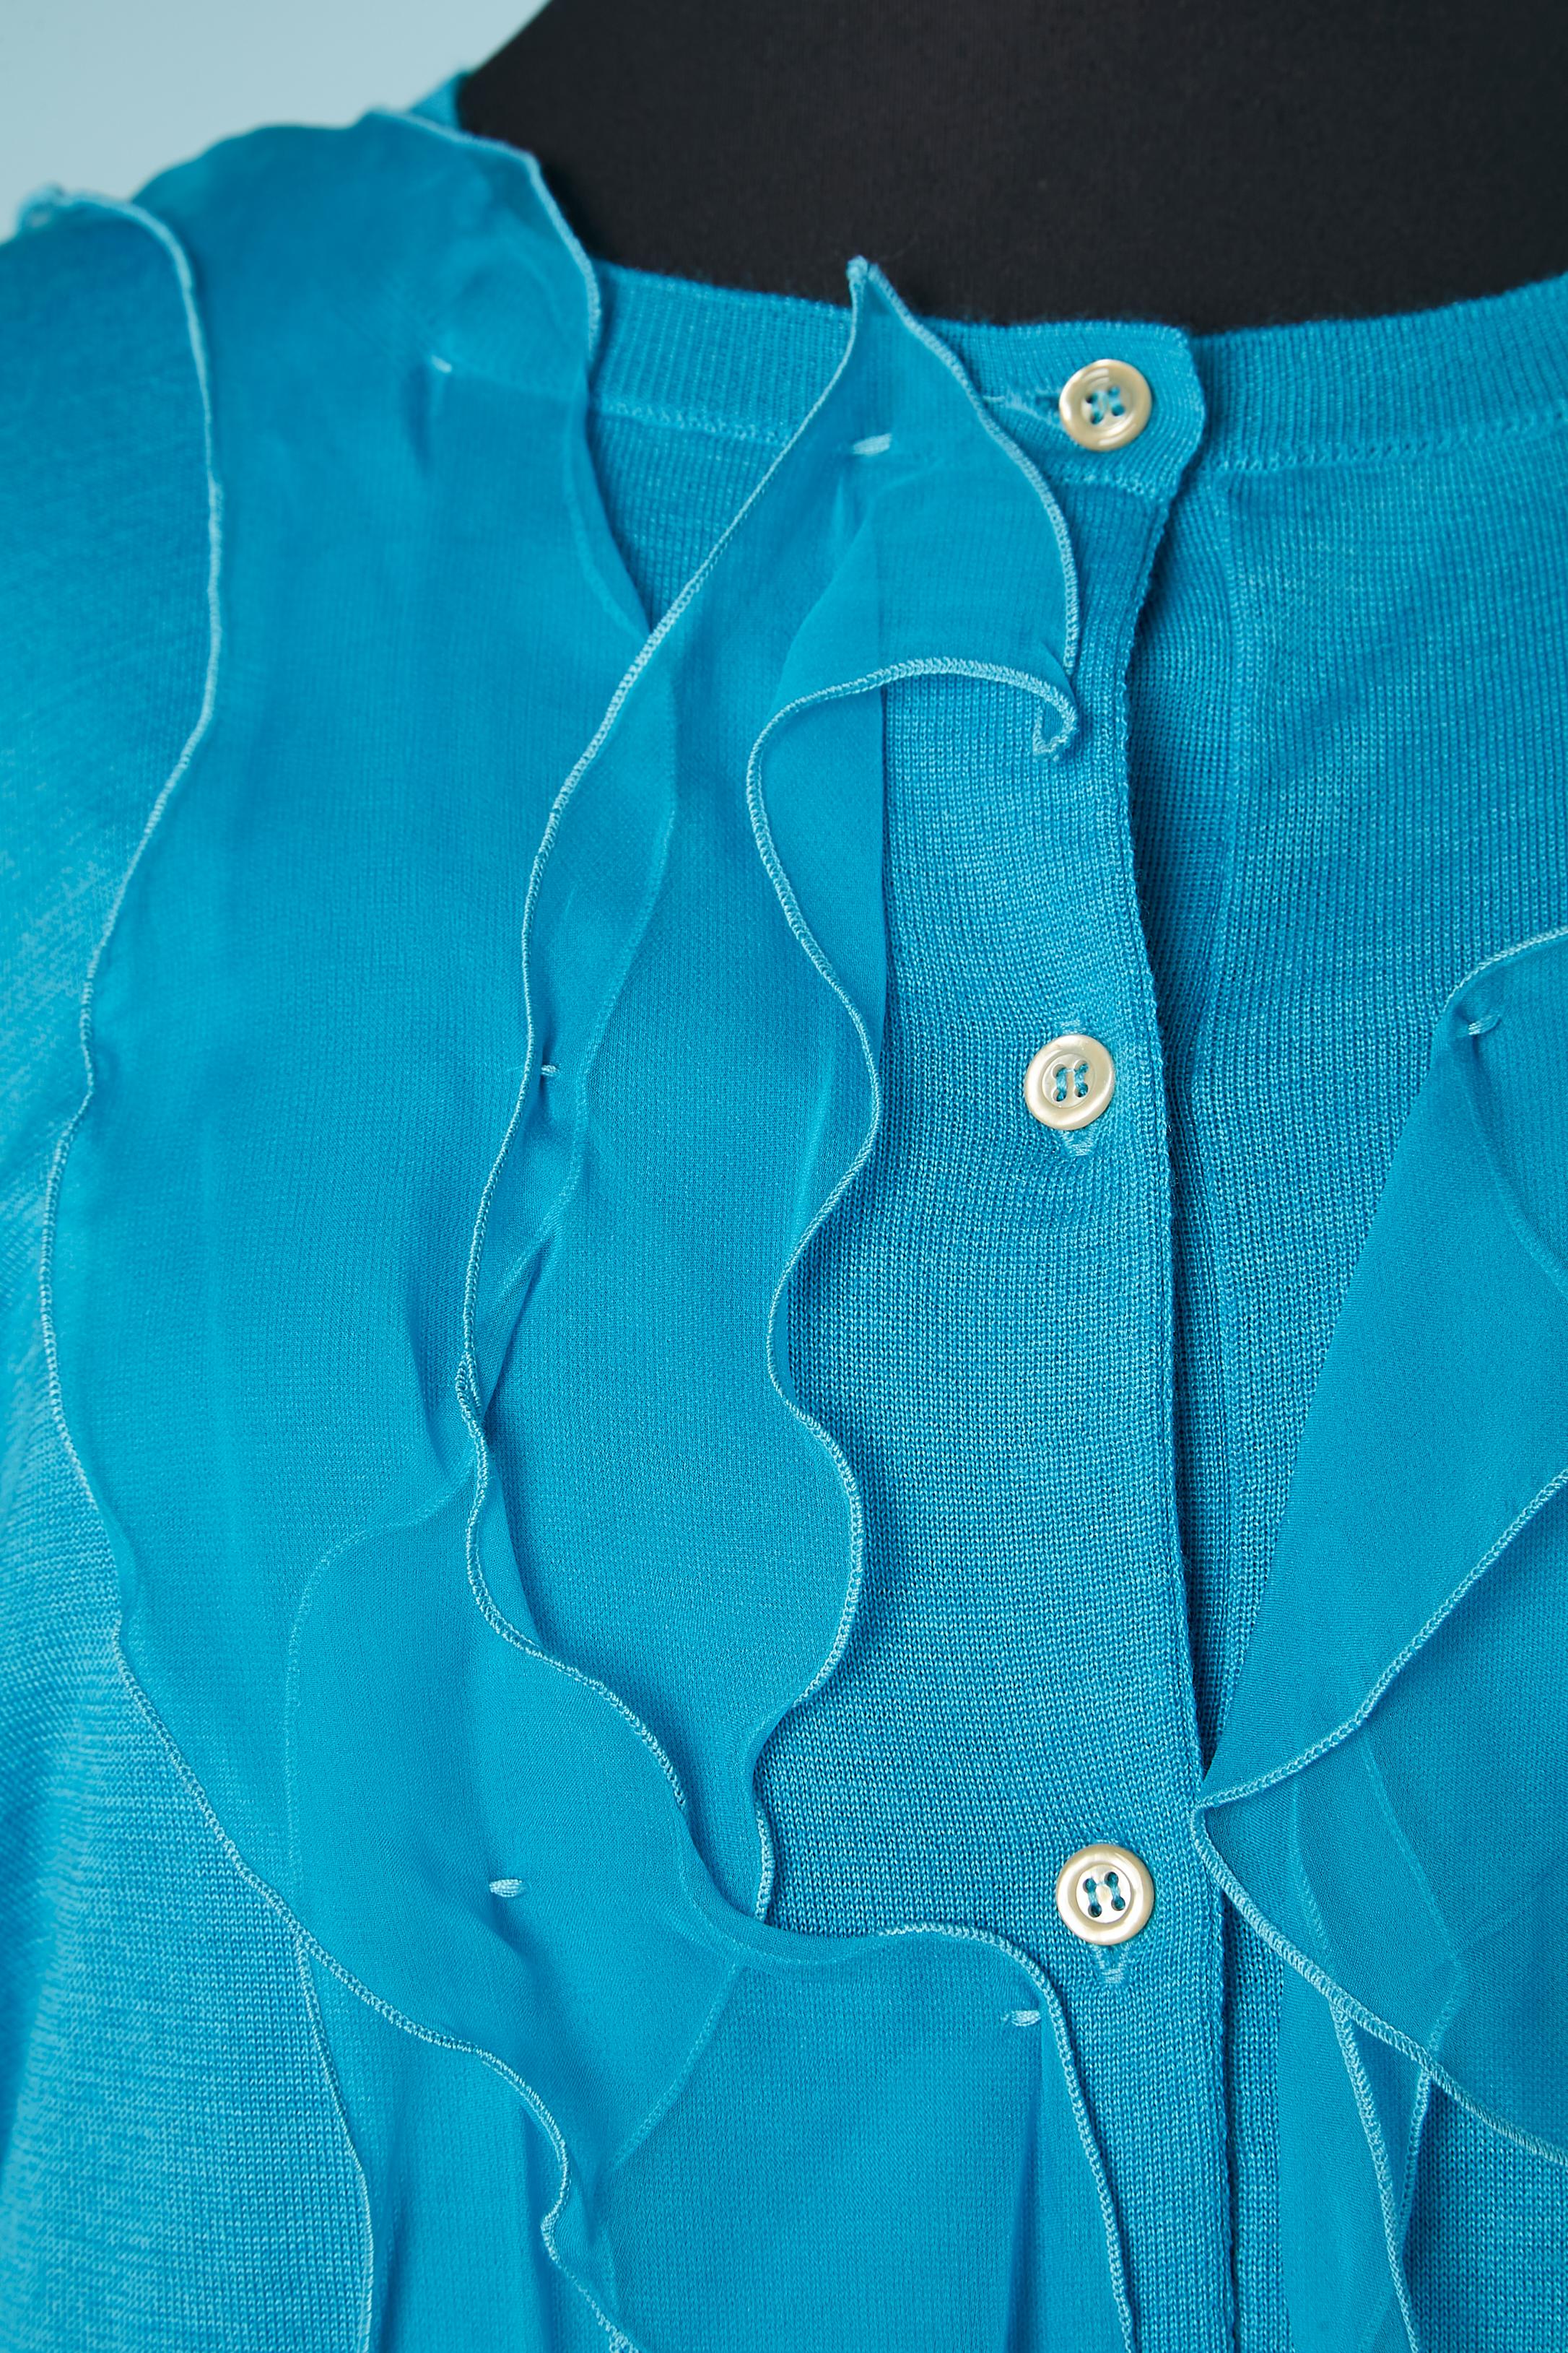 Ensemble cardigan en cachemire bleu et robe en mousseline de soie bleue. Composition du cardigan : 70% cachemire, 30% soie. 
Robe : 100% mousseline de soie. Application de rubans de mousseline de soie en coupe brute sur la robe. 
TAILLE cardigan :